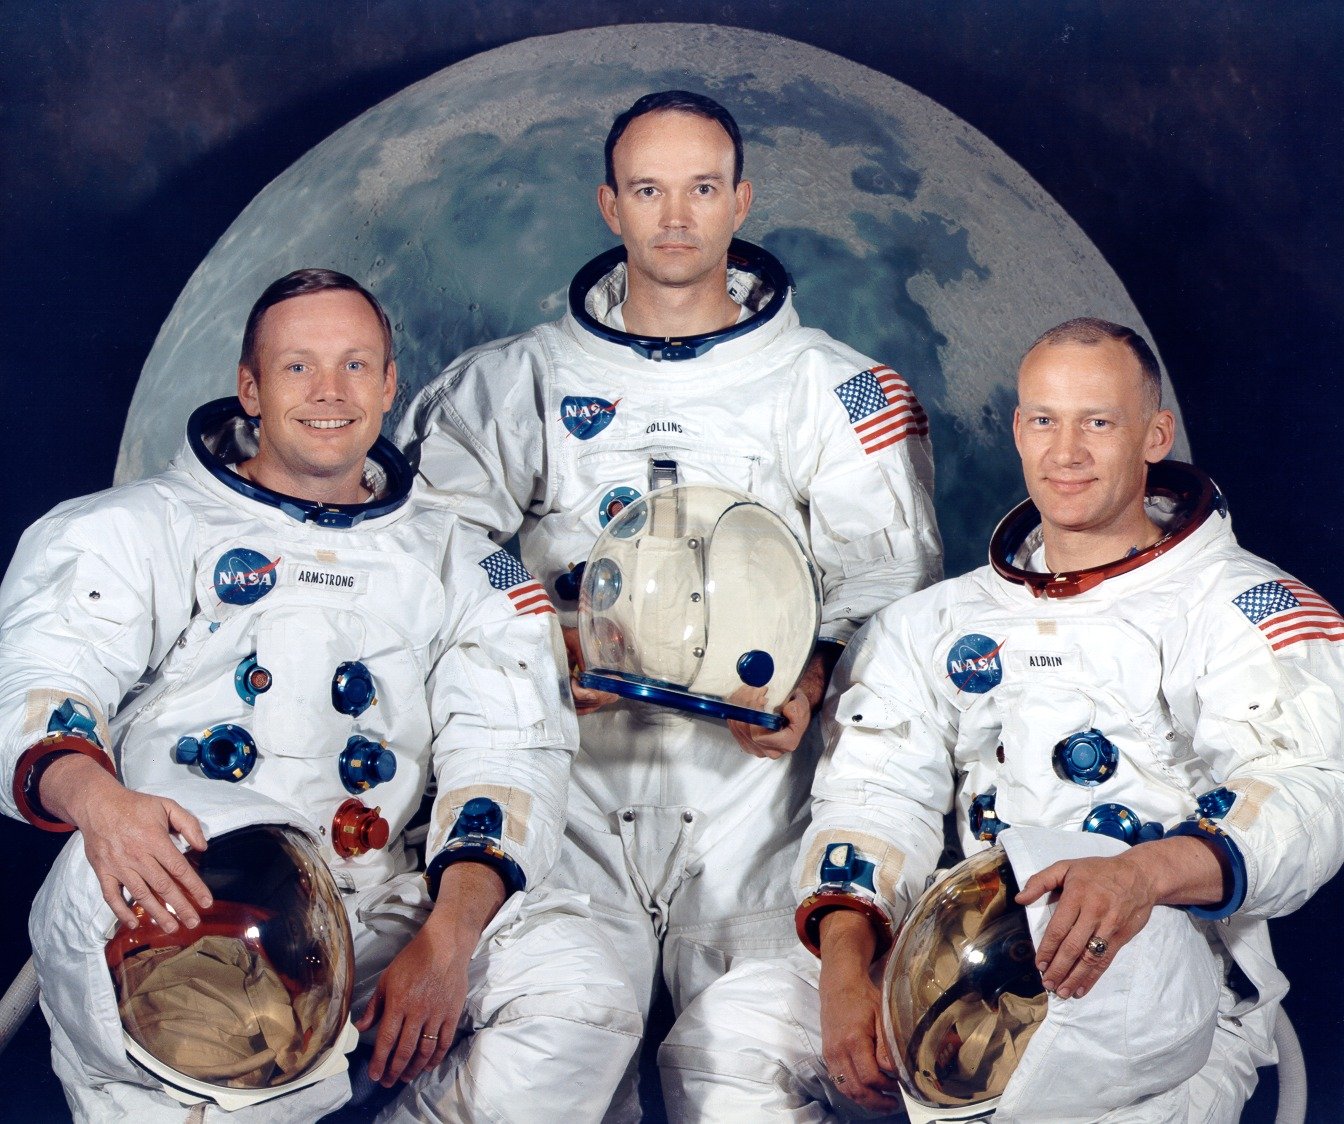 The Apollo1 Astronauts